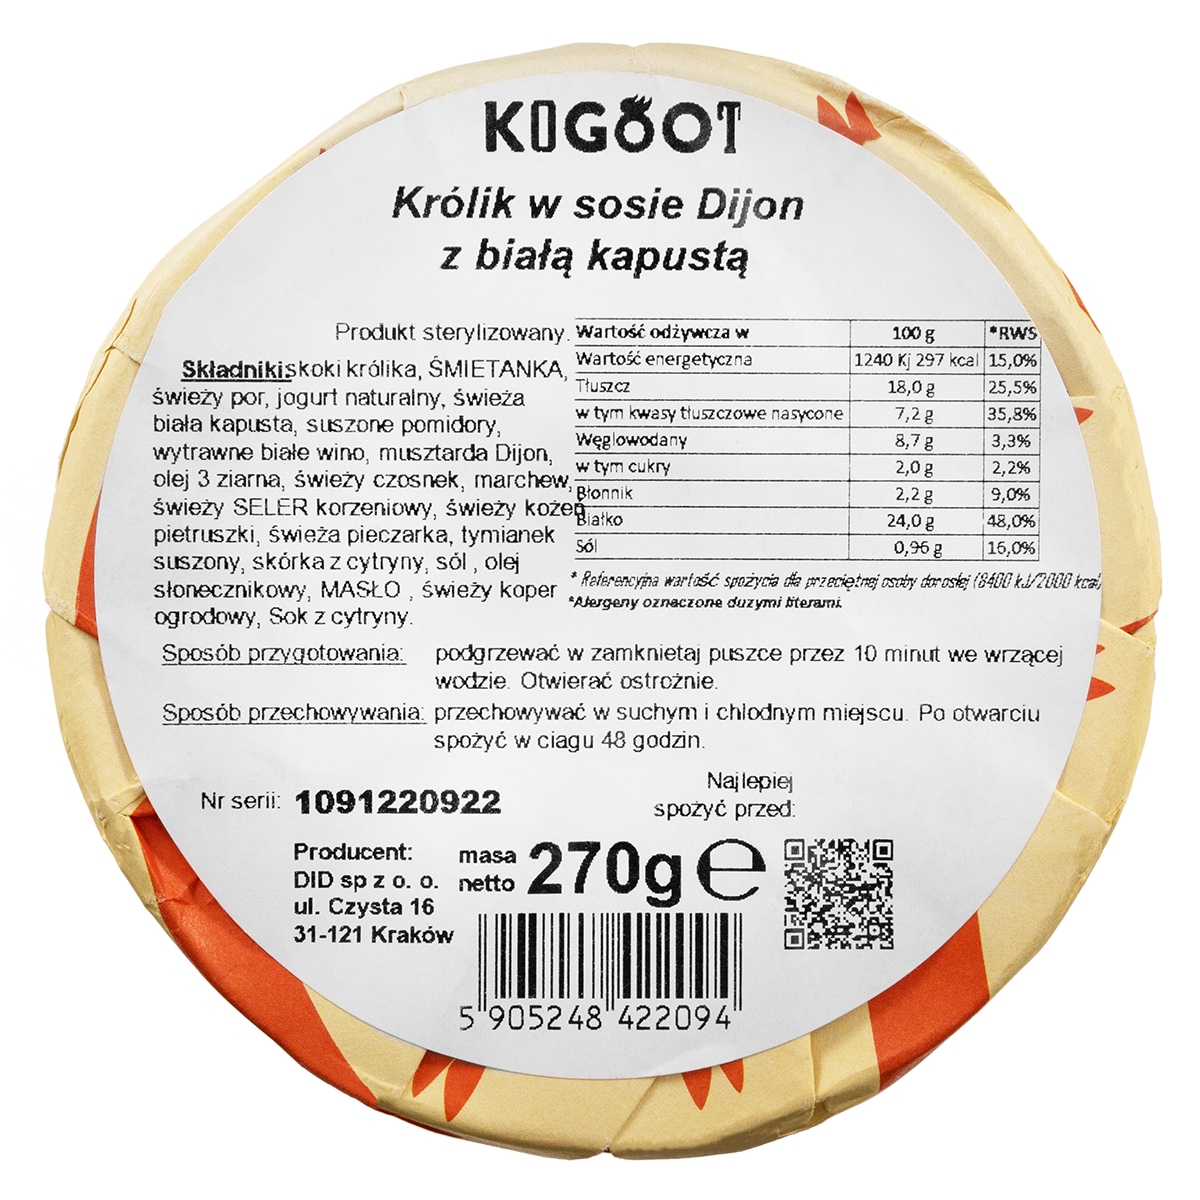 Żywność konserwowana Kogoot - Królik w sosie dijon z białą kapustą